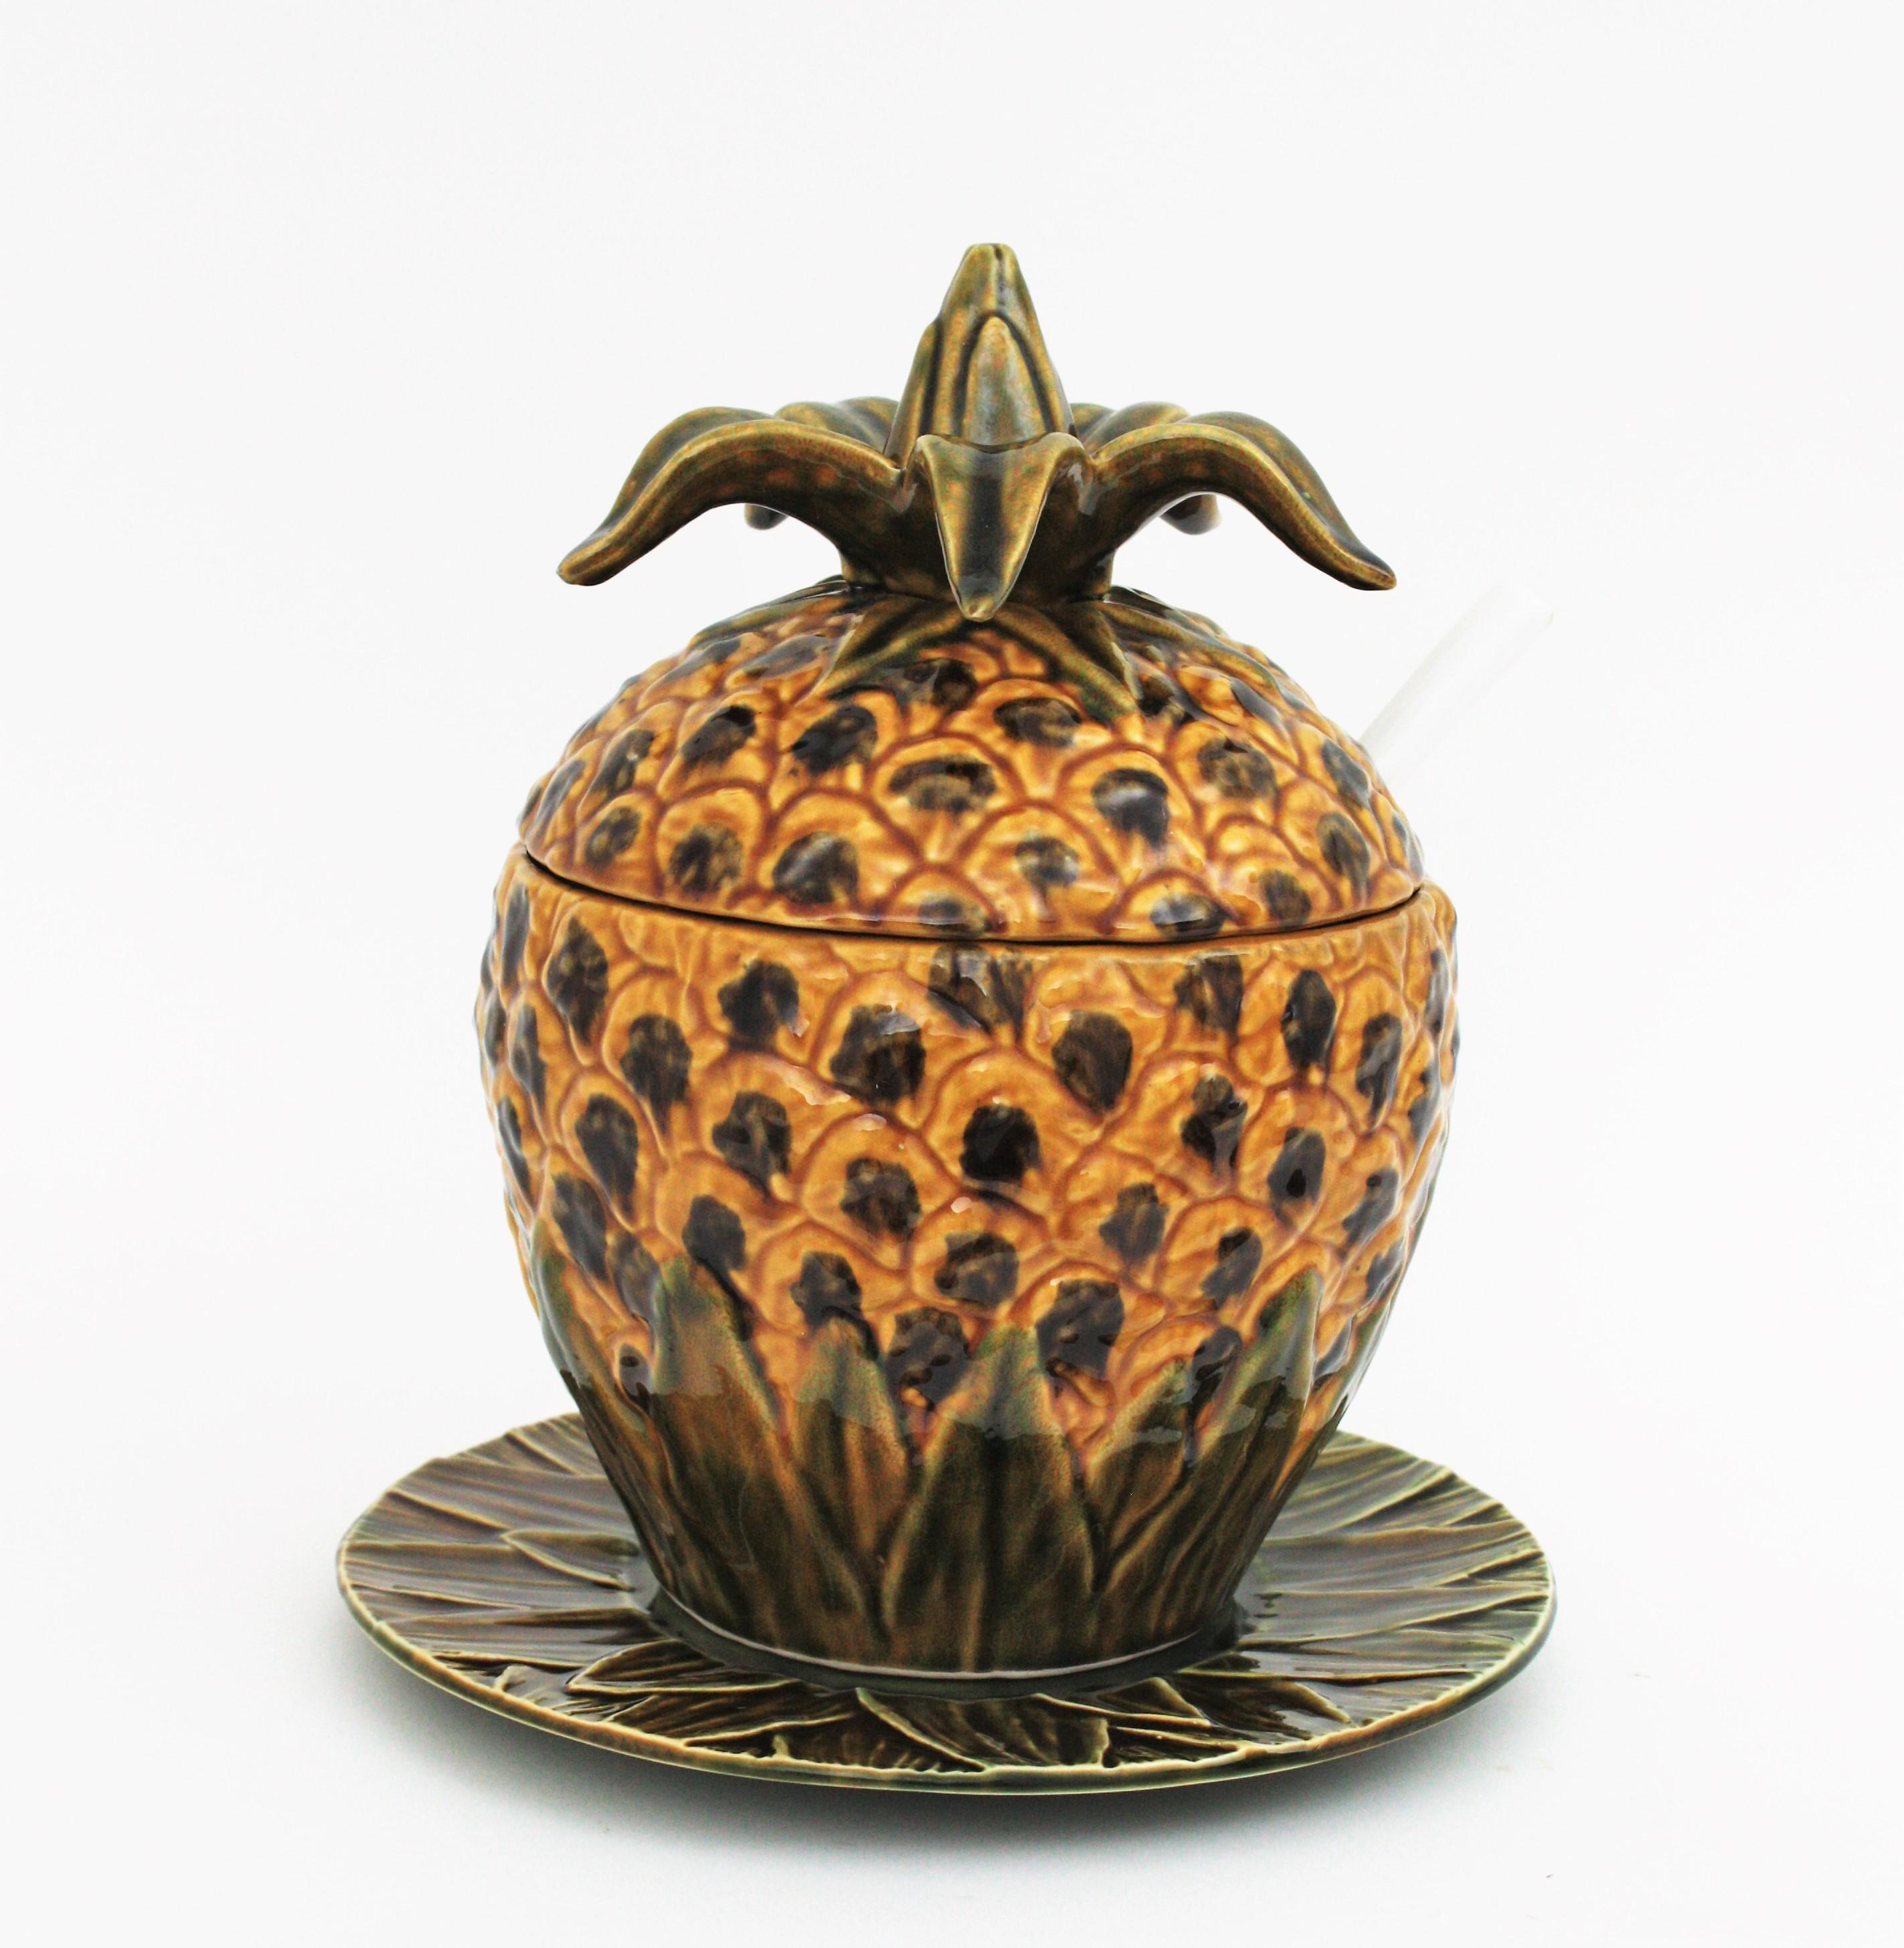 Ananasterrine mit Teller und Schöpfkelle; Majolika, glasierte Keramik. Portugal, 1960er Jahre
Diese große Terrine hat ein sehr realistisches Ananas-Design. Eine Servierplatte mit Blattmotiv und eine Schöpfkelle vervollständigen das Set. 
Dieses